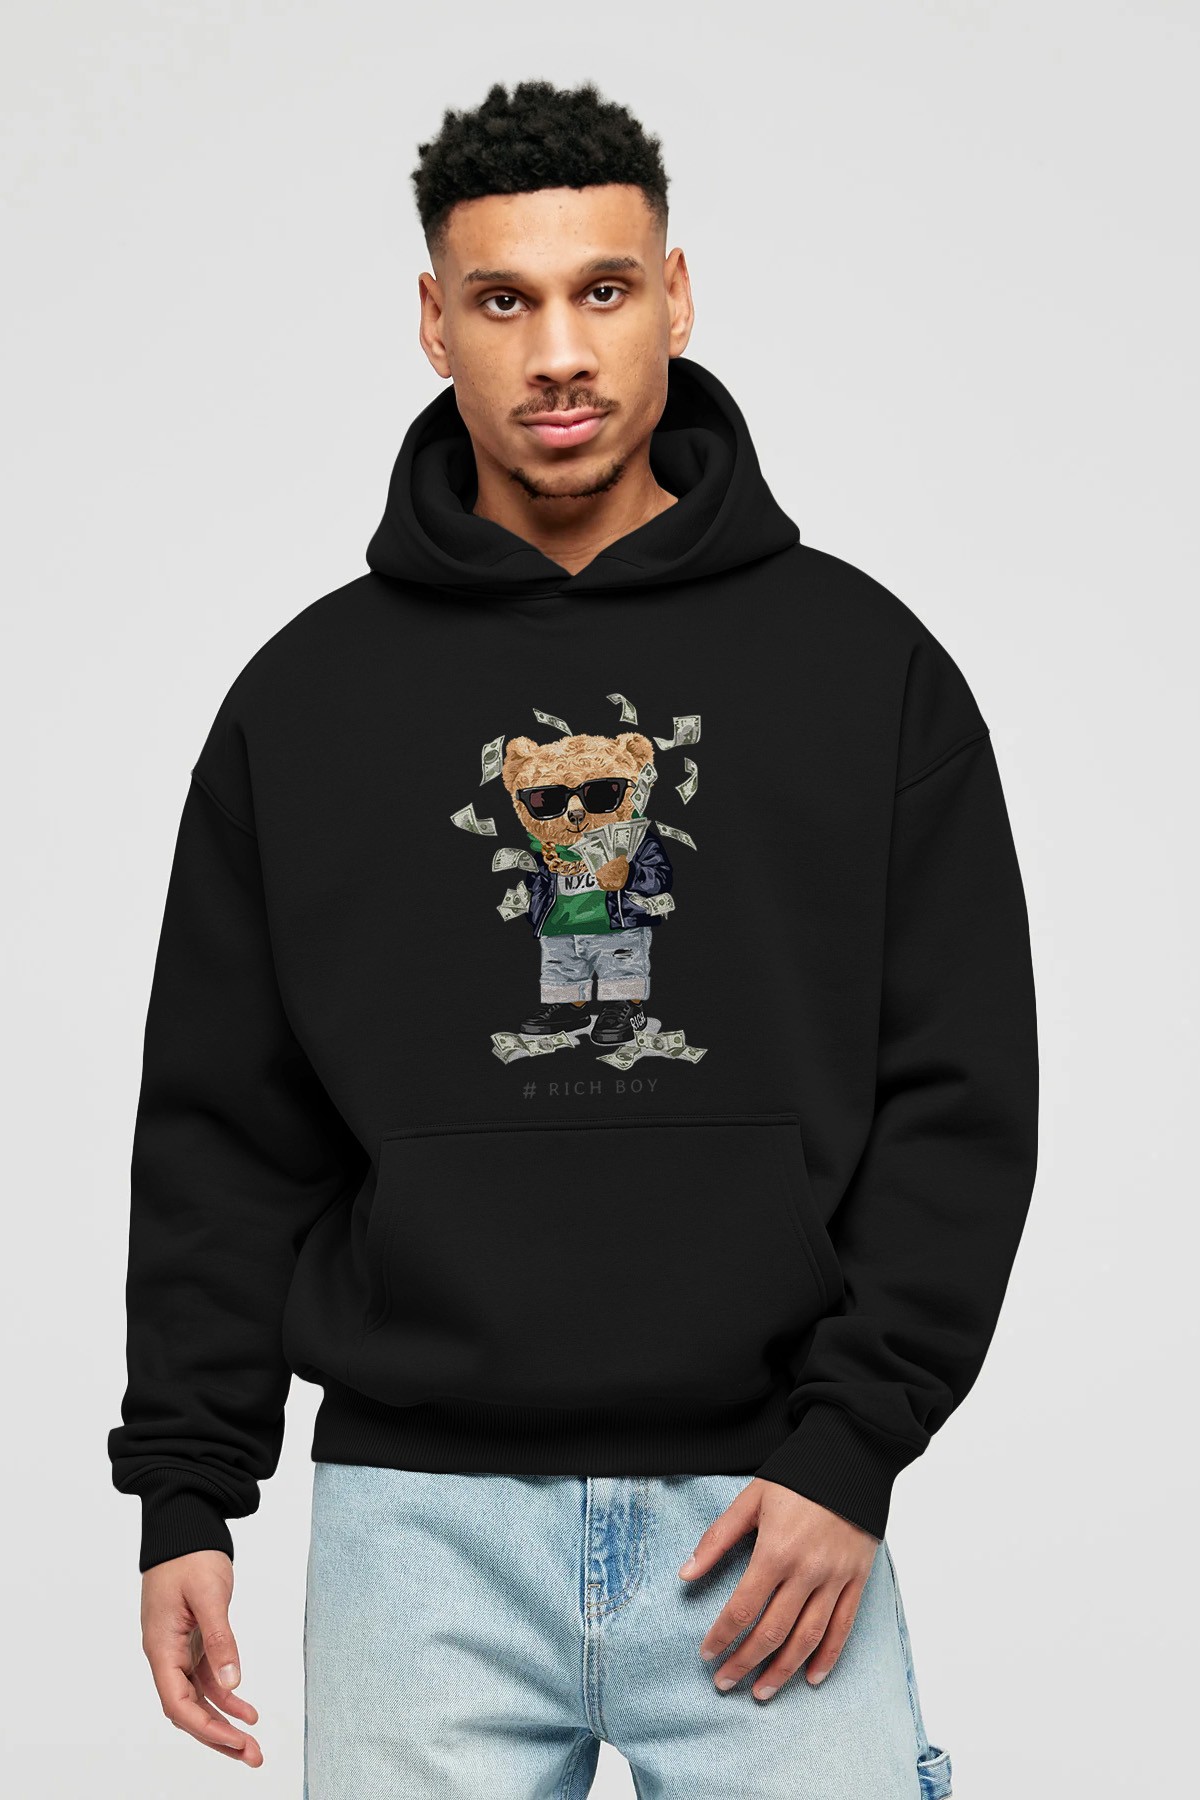 Teddy Bear Rich Boy Ön Baskılı Hoodie Oversize Kapüşonlu Sweatshirt Erkek Kadın Unisex